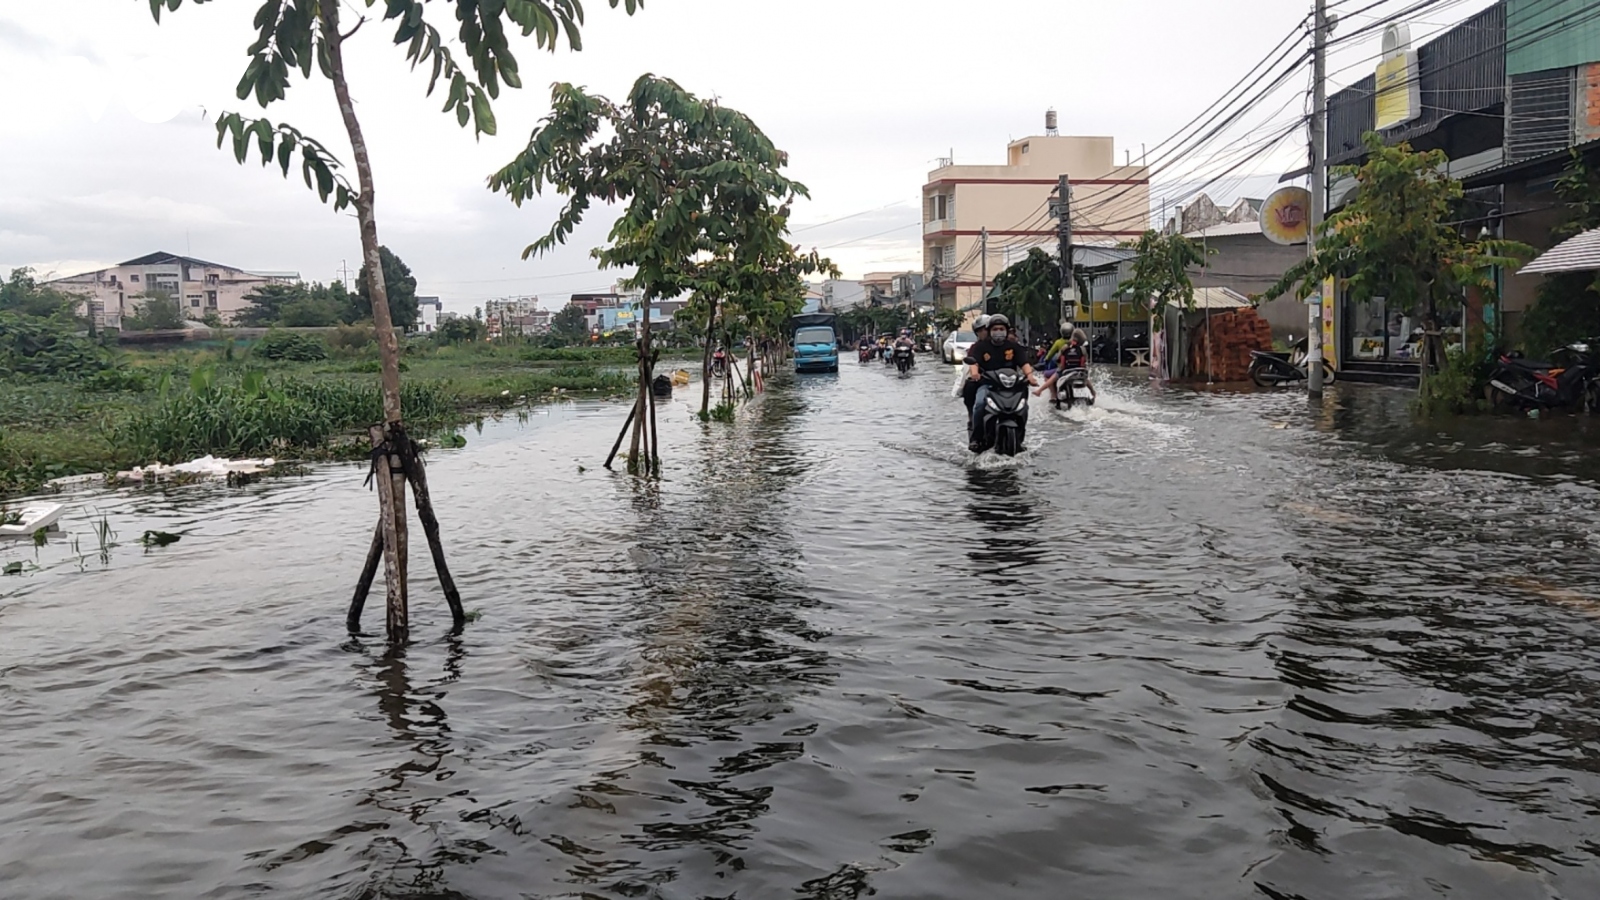 Hồ Bún Xáng - nỗi sợ của người dân Cần Thơ khi mưa bão, triều cường